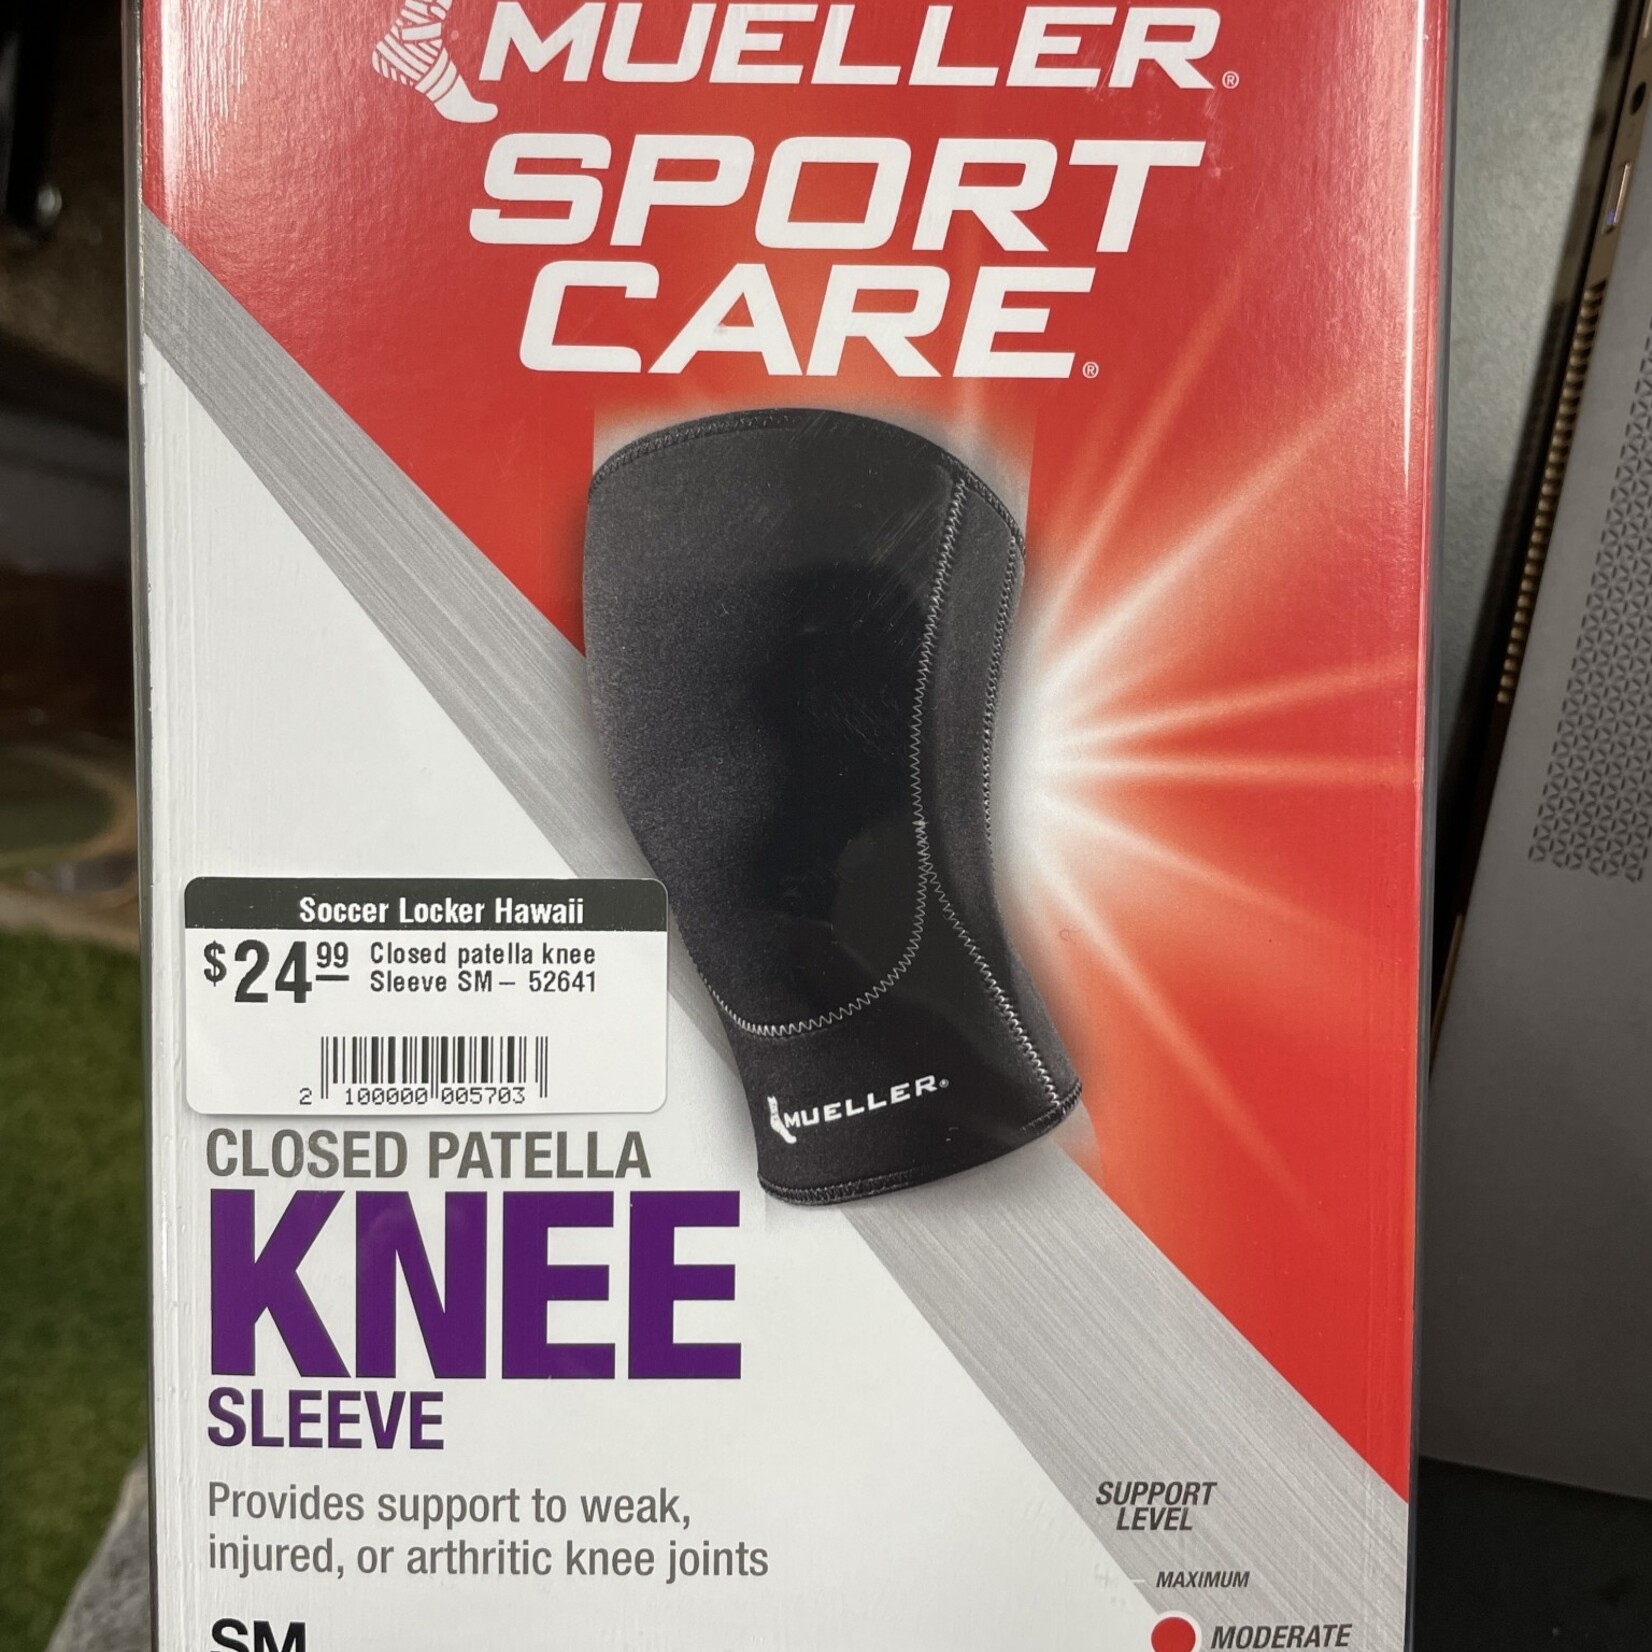 Closed patella knee Sleeve SM- 52641